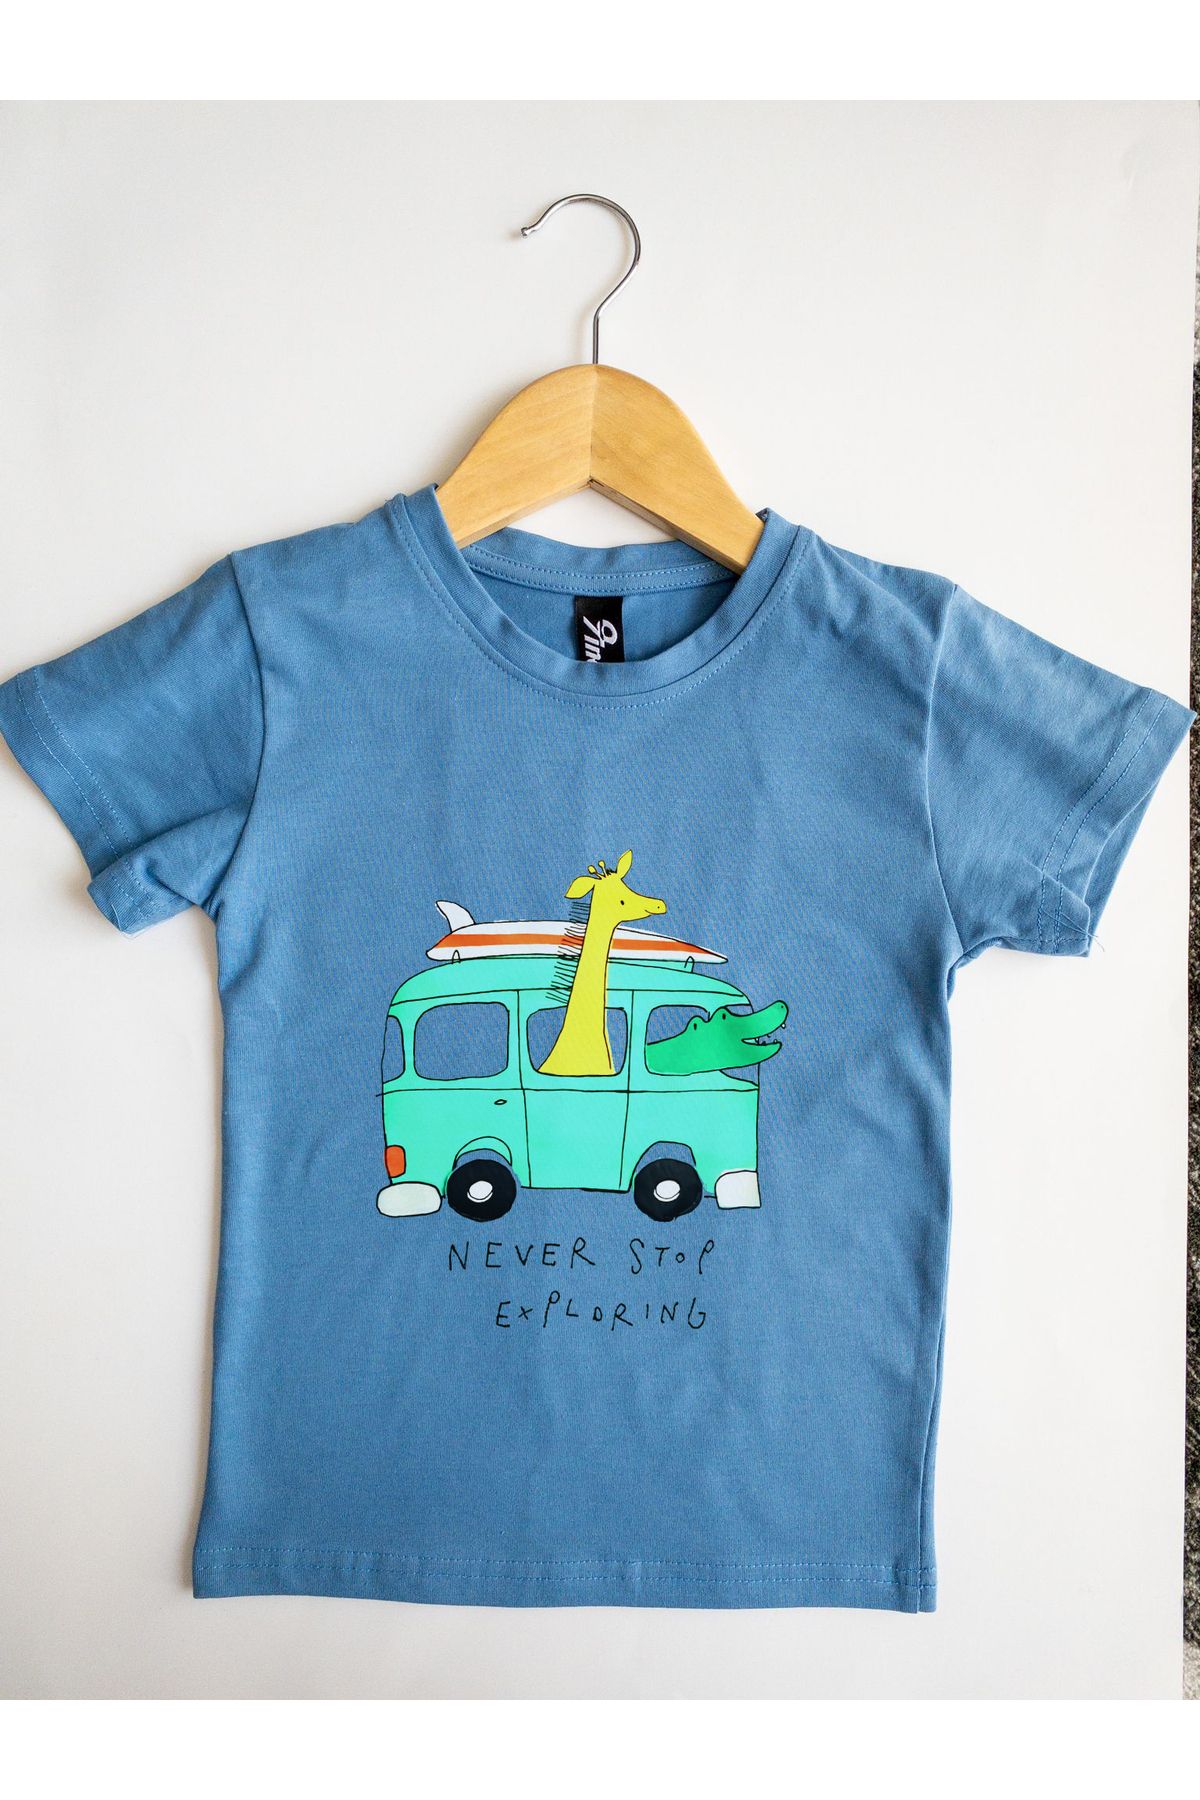 9ine UNISEX ÇOCUK Dinazorlu Mavi Otobüs Baskılı Rahat Kalıp %100 Pamuk Örme Kumaş T-shirt